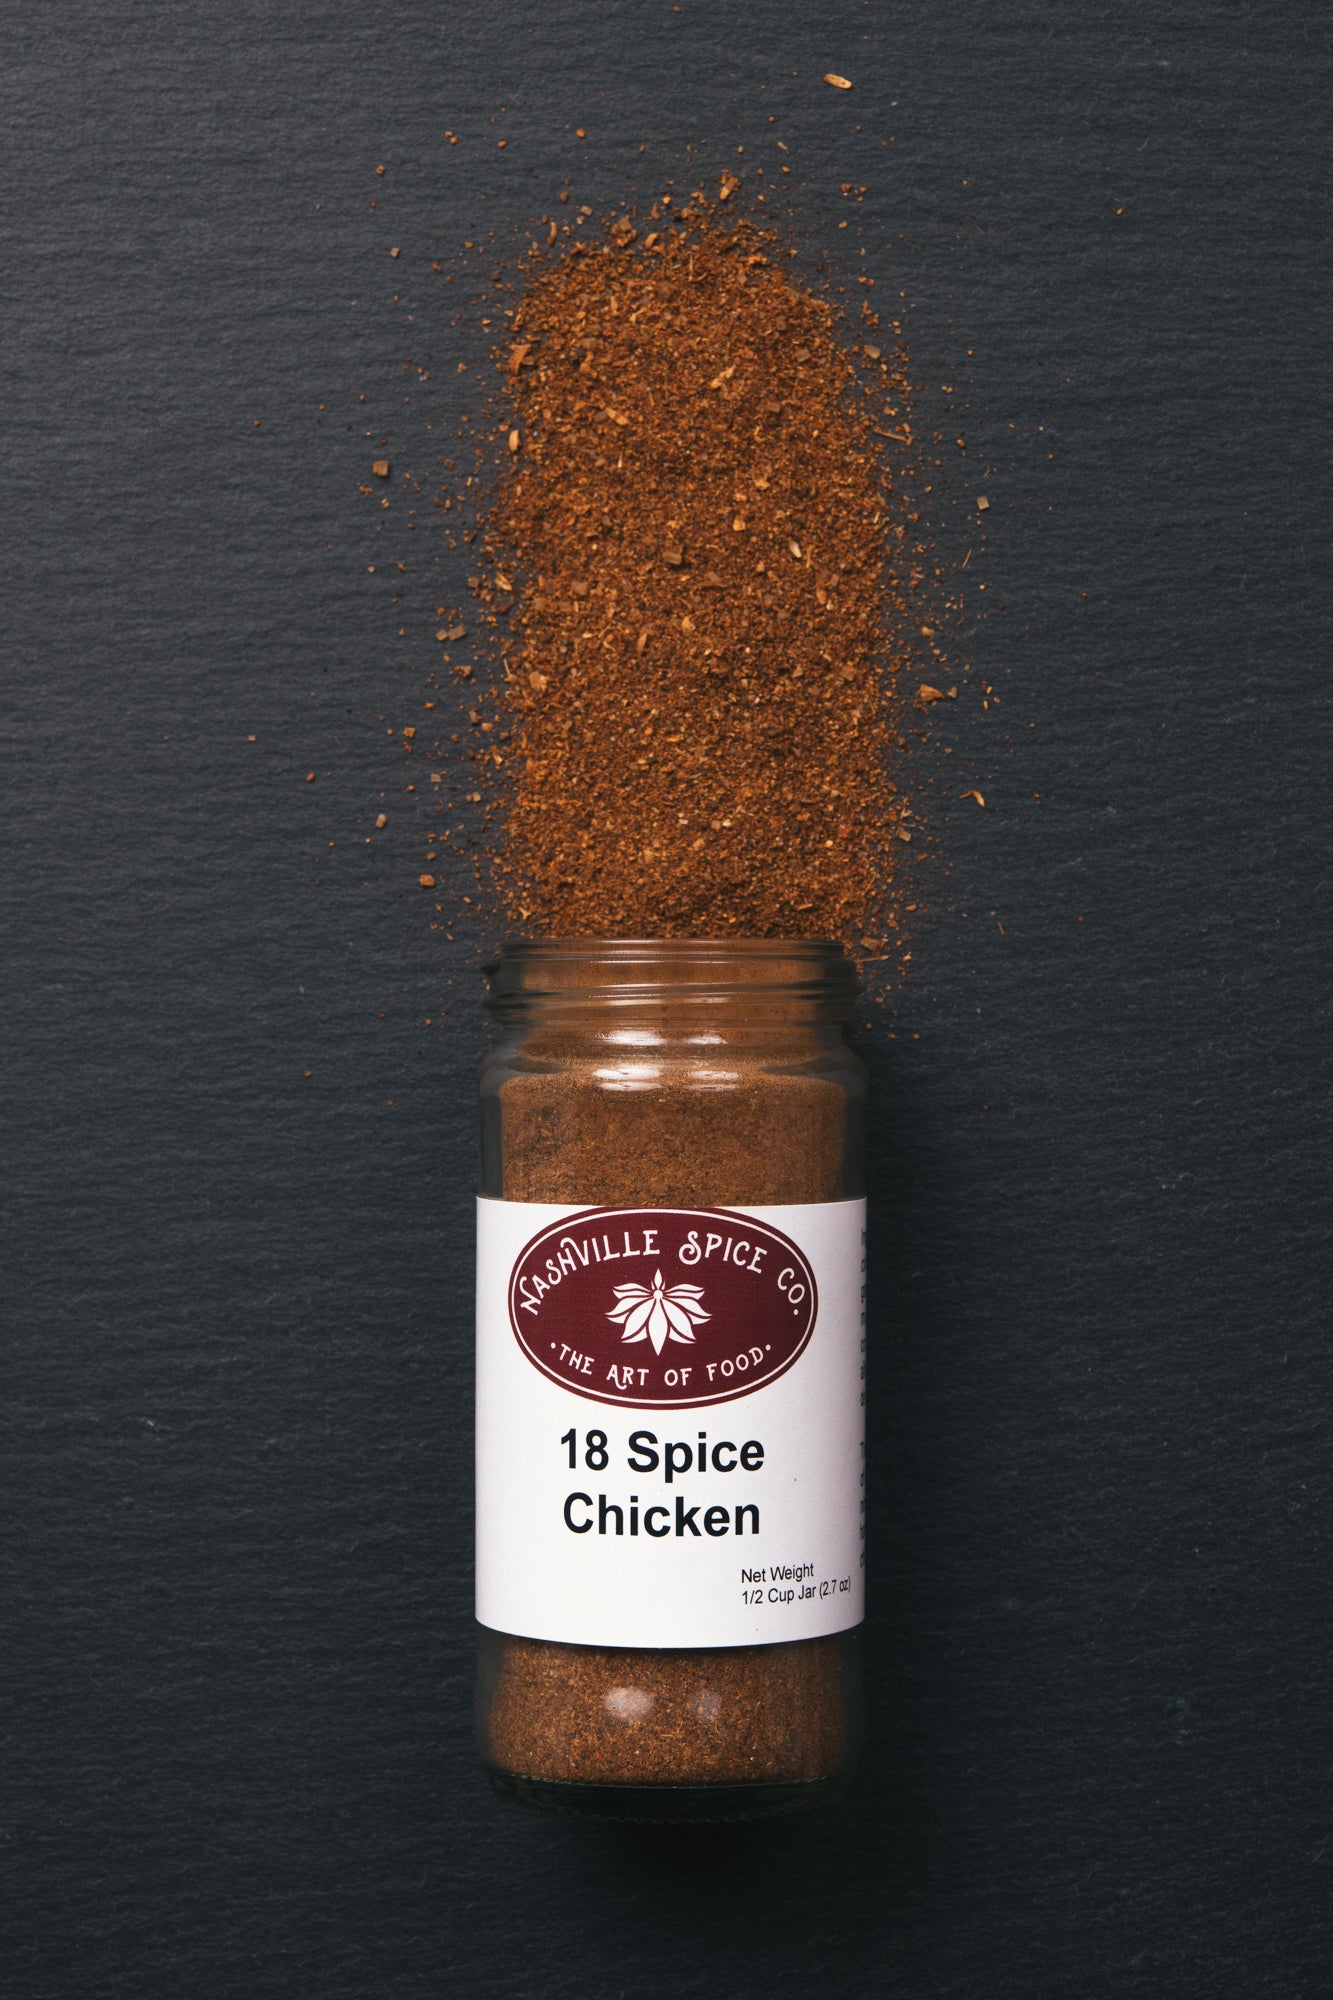 18 Spice Chicken Rub